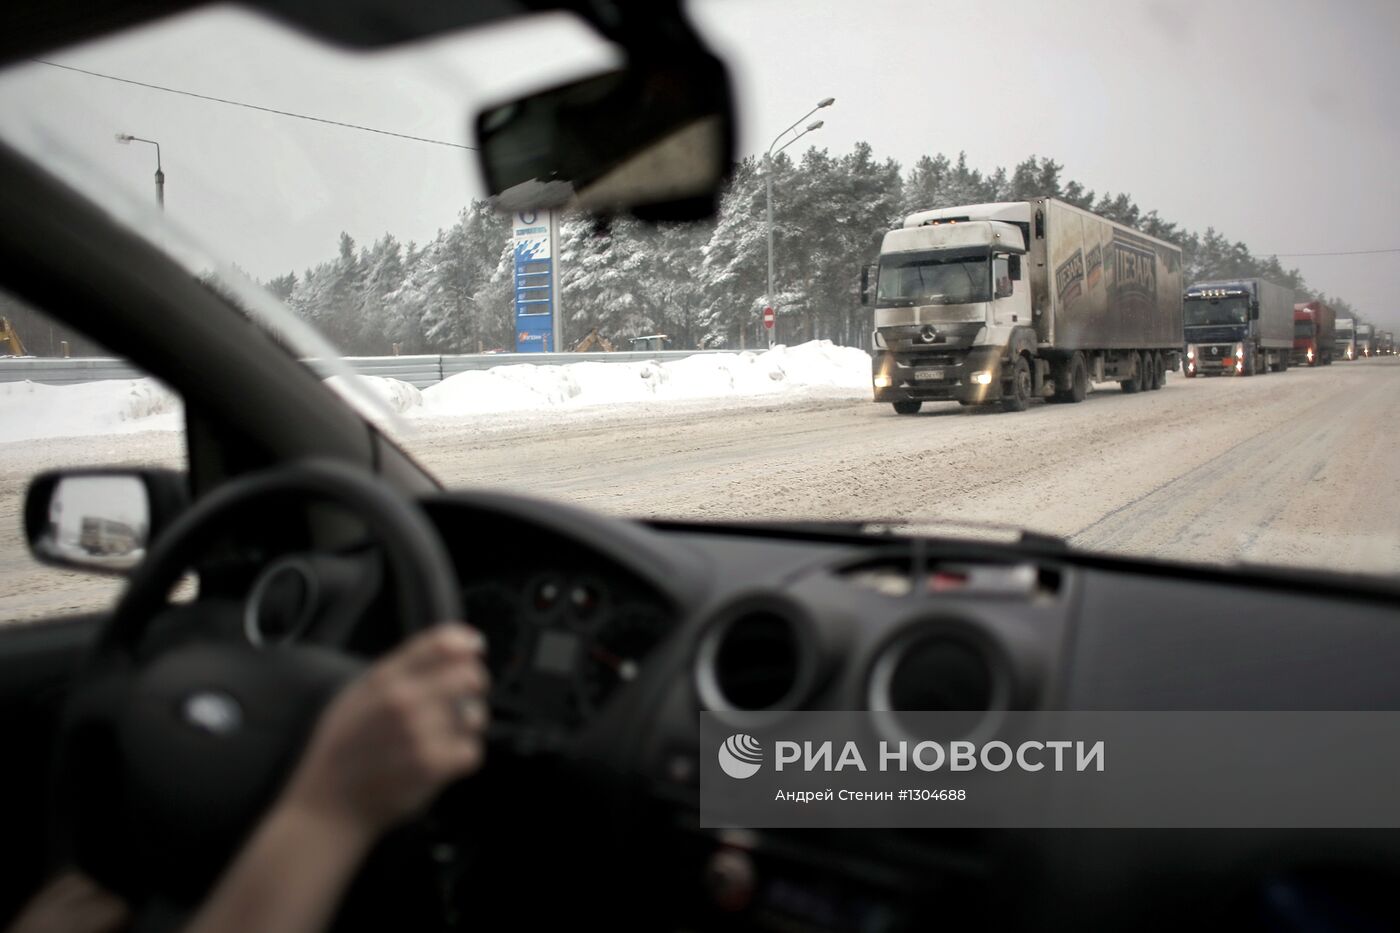 Многодневная пробка на федеральной трассе М-10 "Россия"